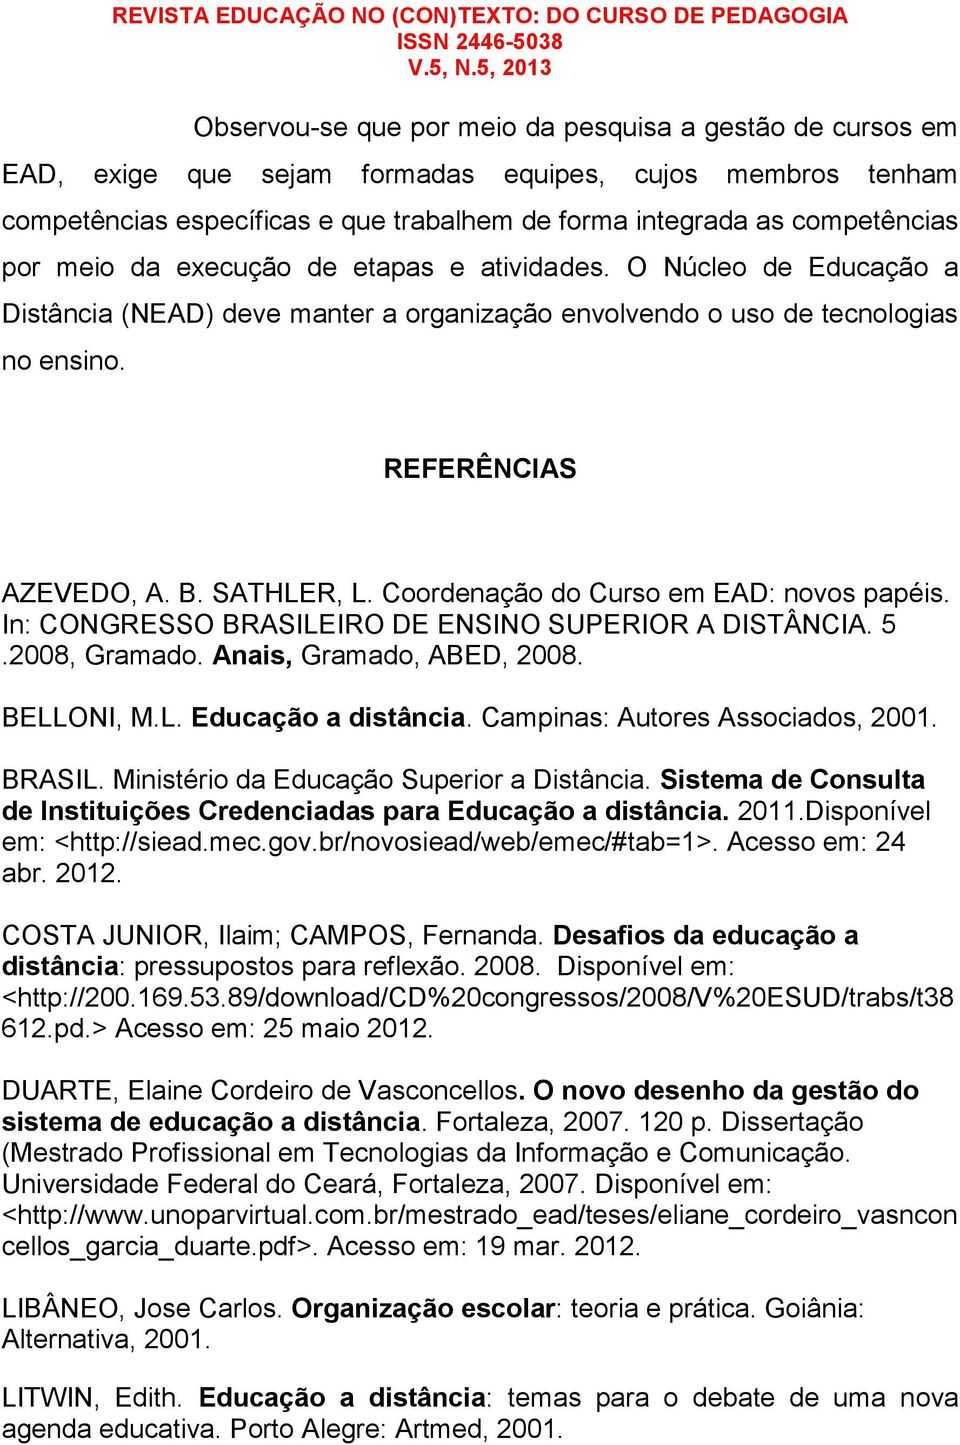 Coordenação do Curso em EAD: novos papéis. In: CONGRESSO BRASILEIRO DE ENSINO SUPERIOR A DISTÂNCIA. 5.2008, Gramado. Anais, Gramado, ABED, 2008. BELLONI, M.L. Educação a distância.